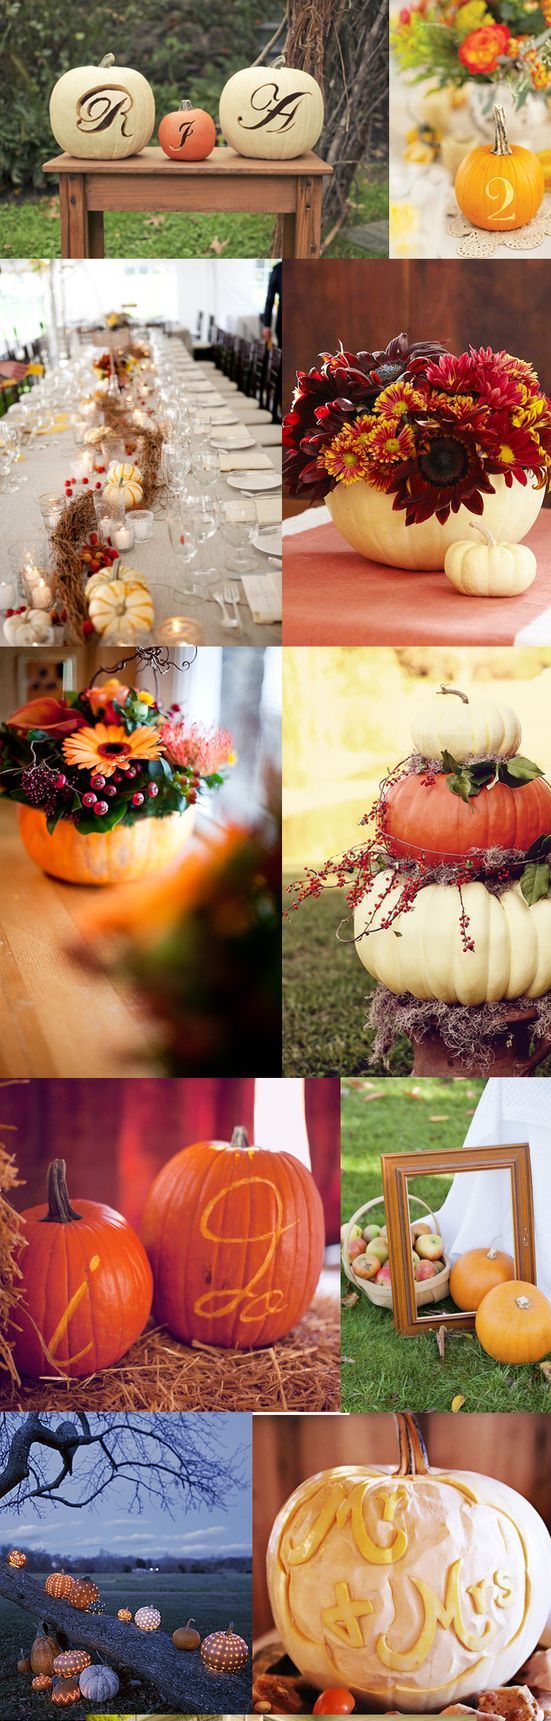 pumpkin wedding ideas